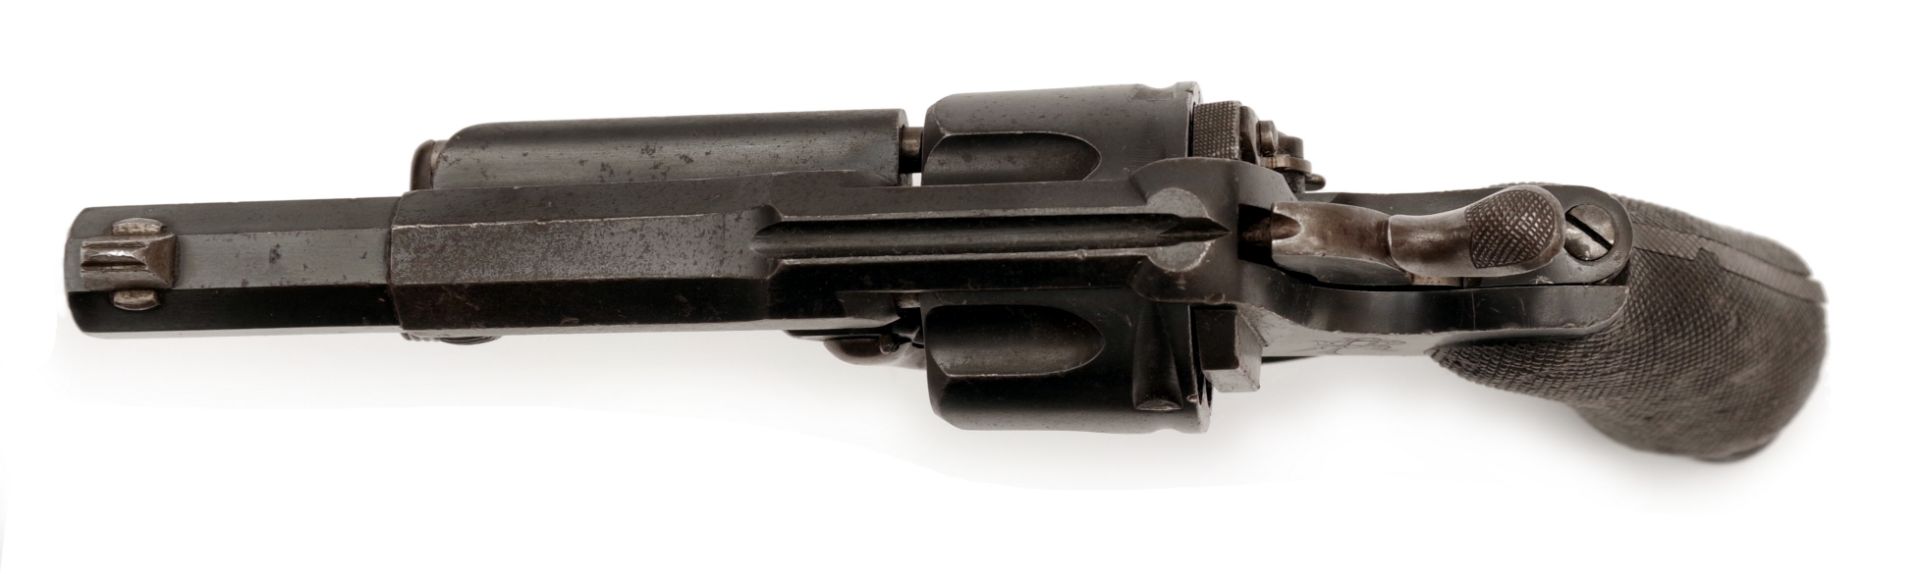 Revolver für Offiziere Fagnus-Maquaire - Bild 5 aus 5